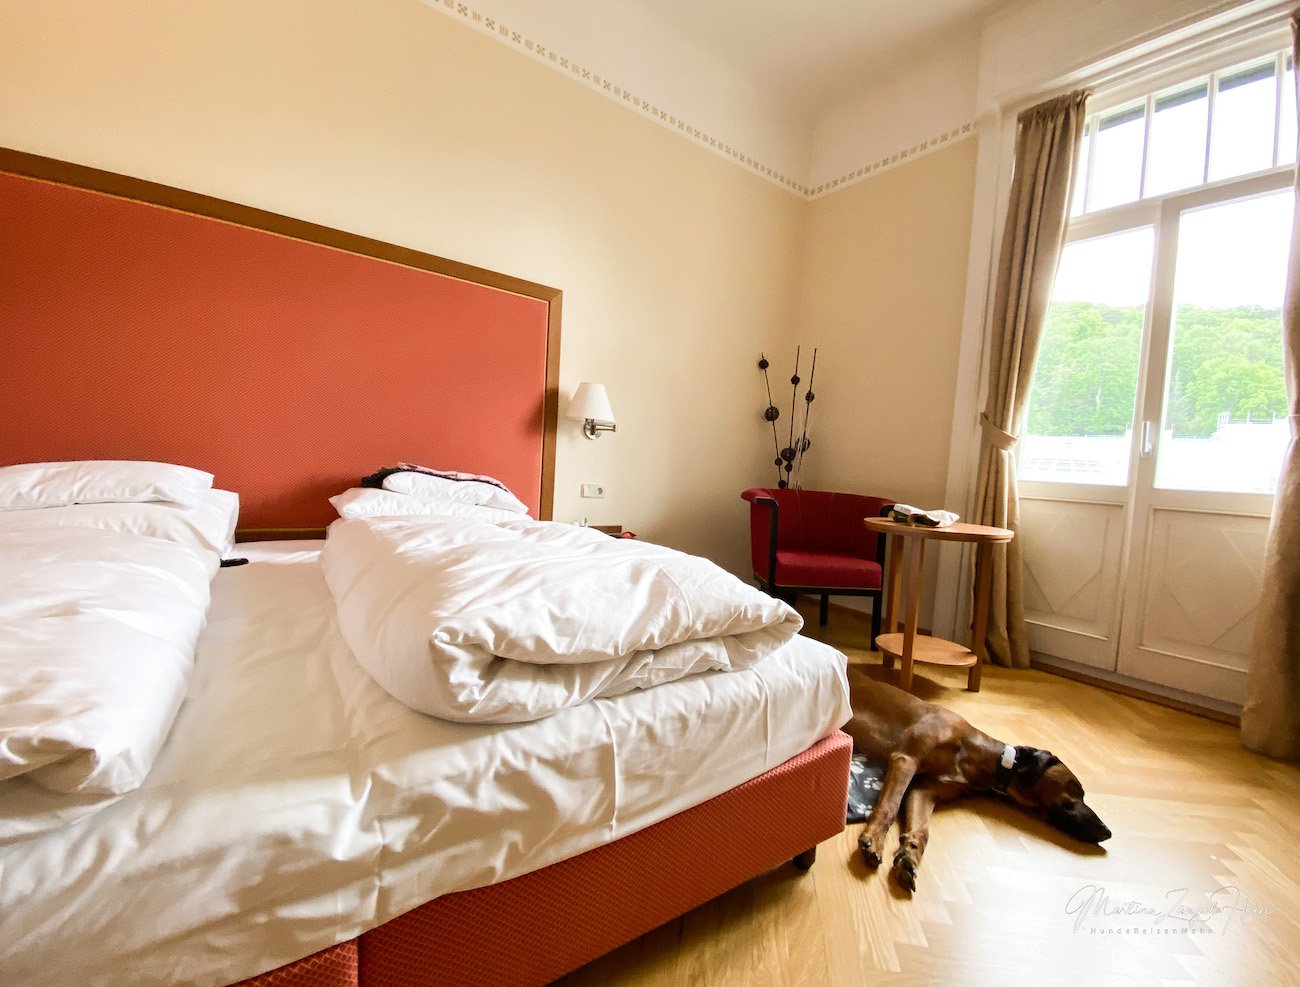 Hotel Herzoghof - Jugendstil und ein Herz für Hunde! Raban hat sich wohlgefühlt